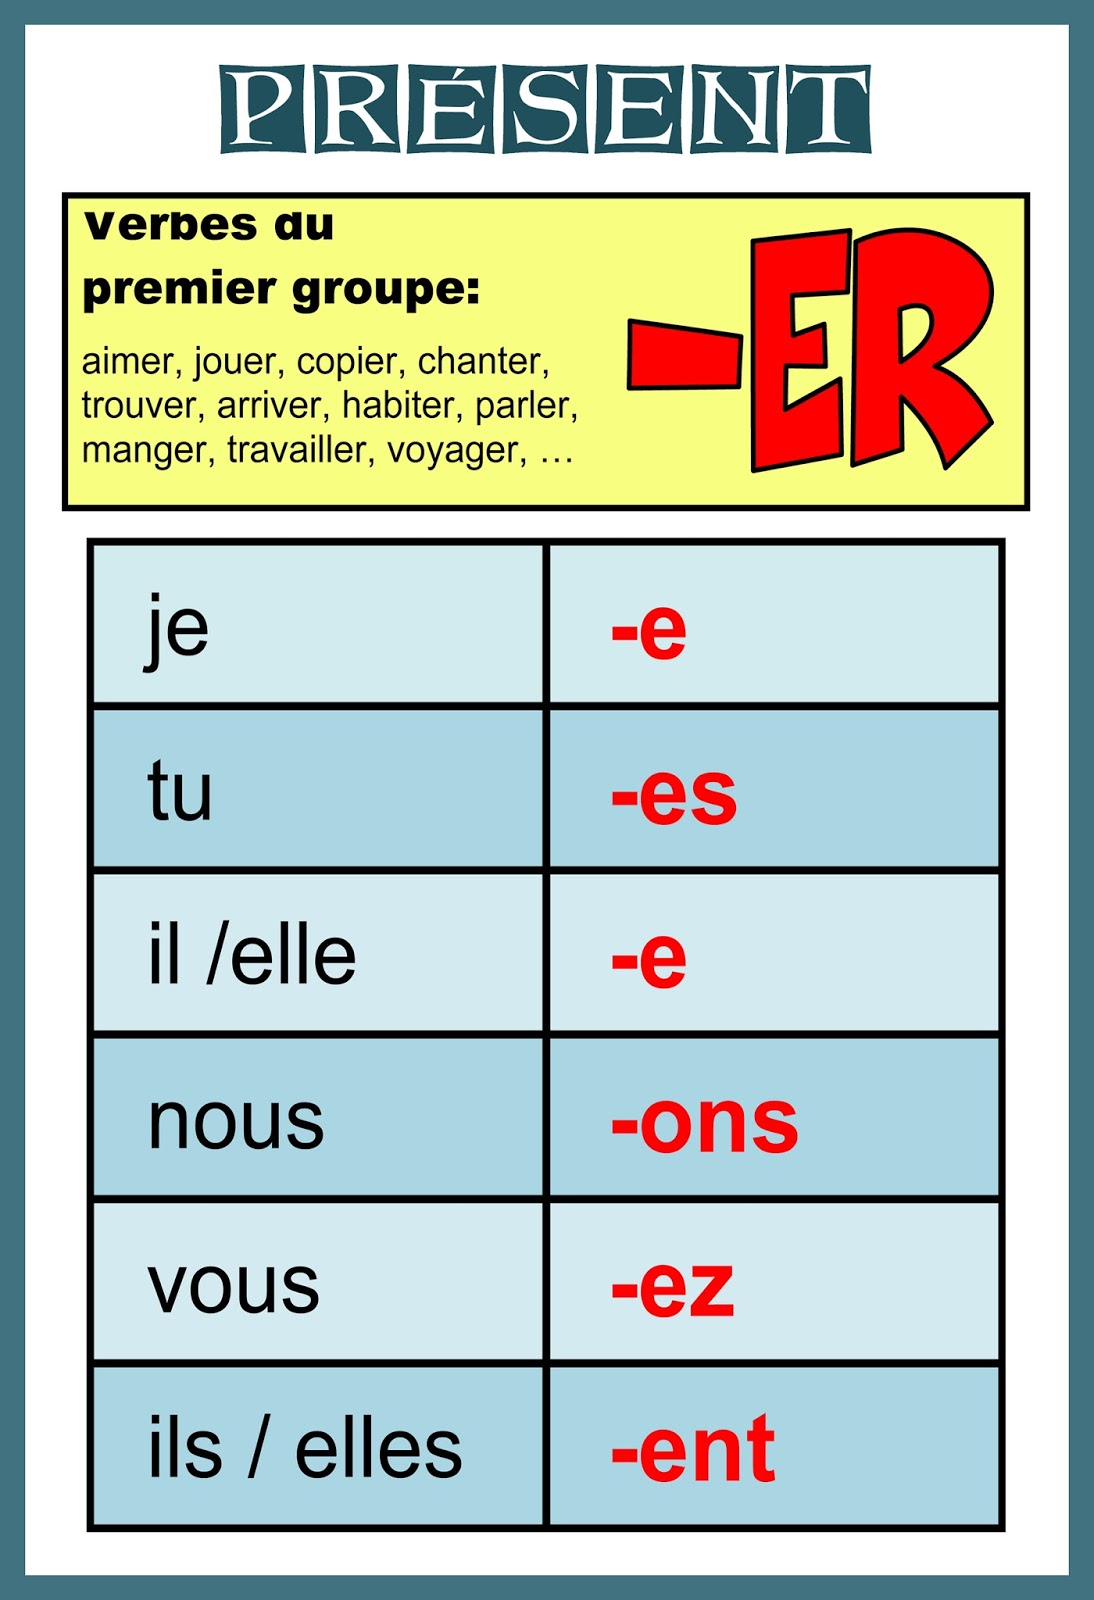 Notre Blog De Fran ais Verbes Du Premier Groupe Pr sent Grammaire